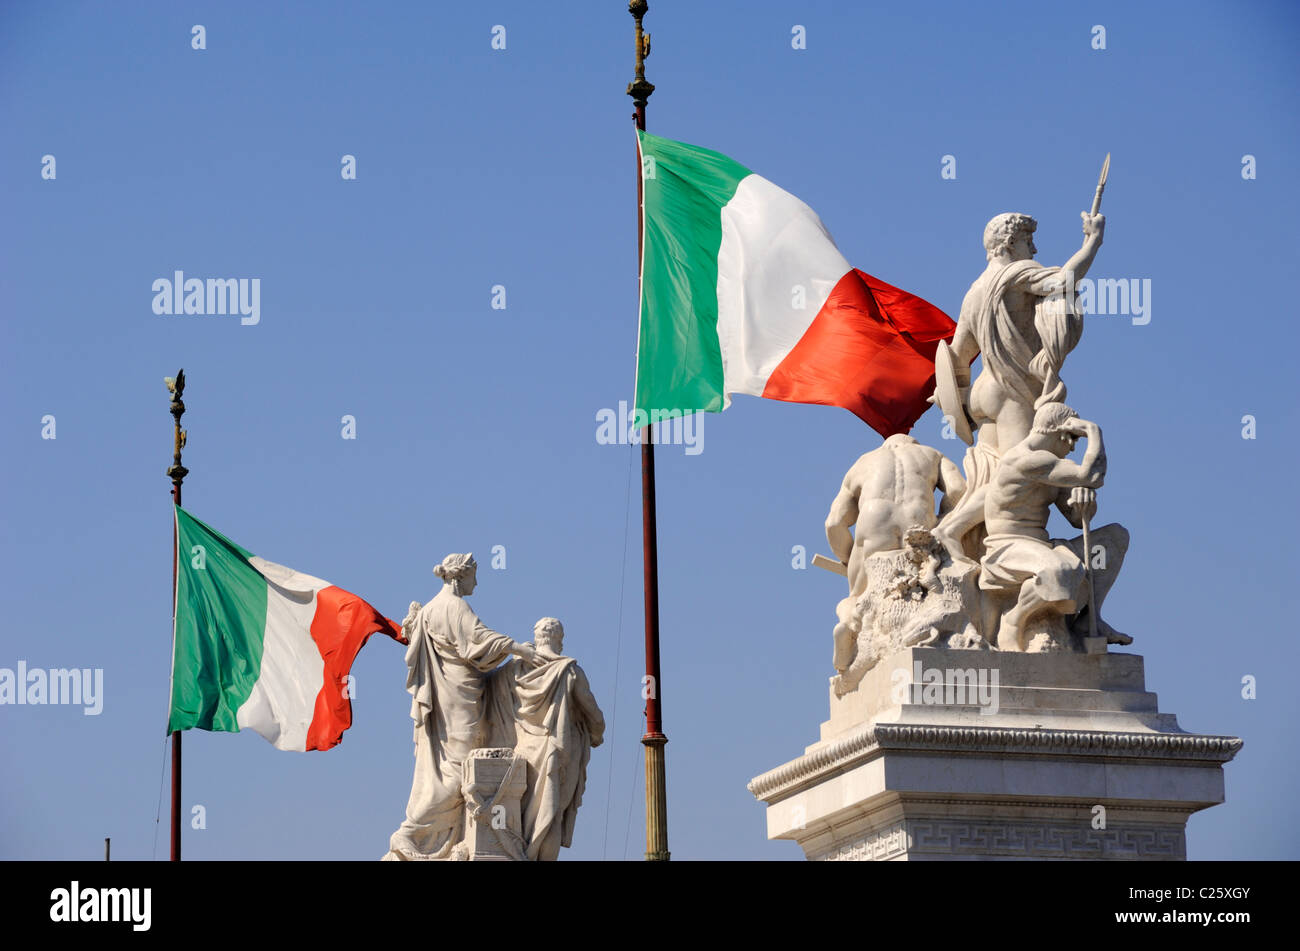 Italia, Roma, Piazza Venezia, Vittoriano, statue e bandiere italiane Foto Stock